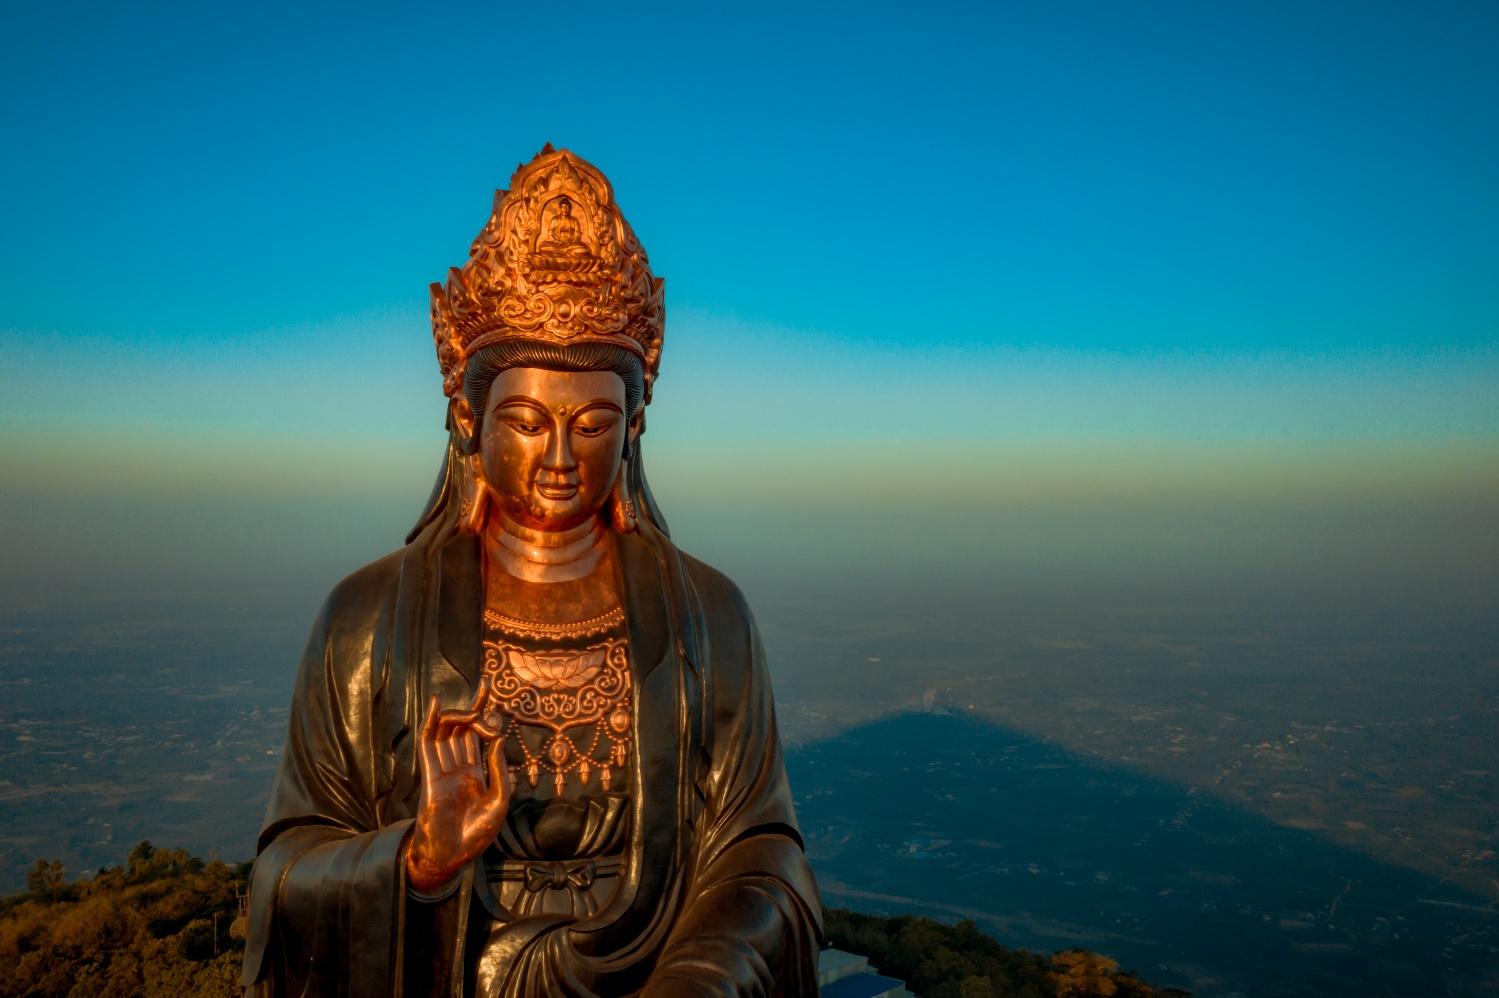 Khám phá ượng Phật Bà bằng đồng cao nhất Châu Á trên đỉnh Bà Đen - 4